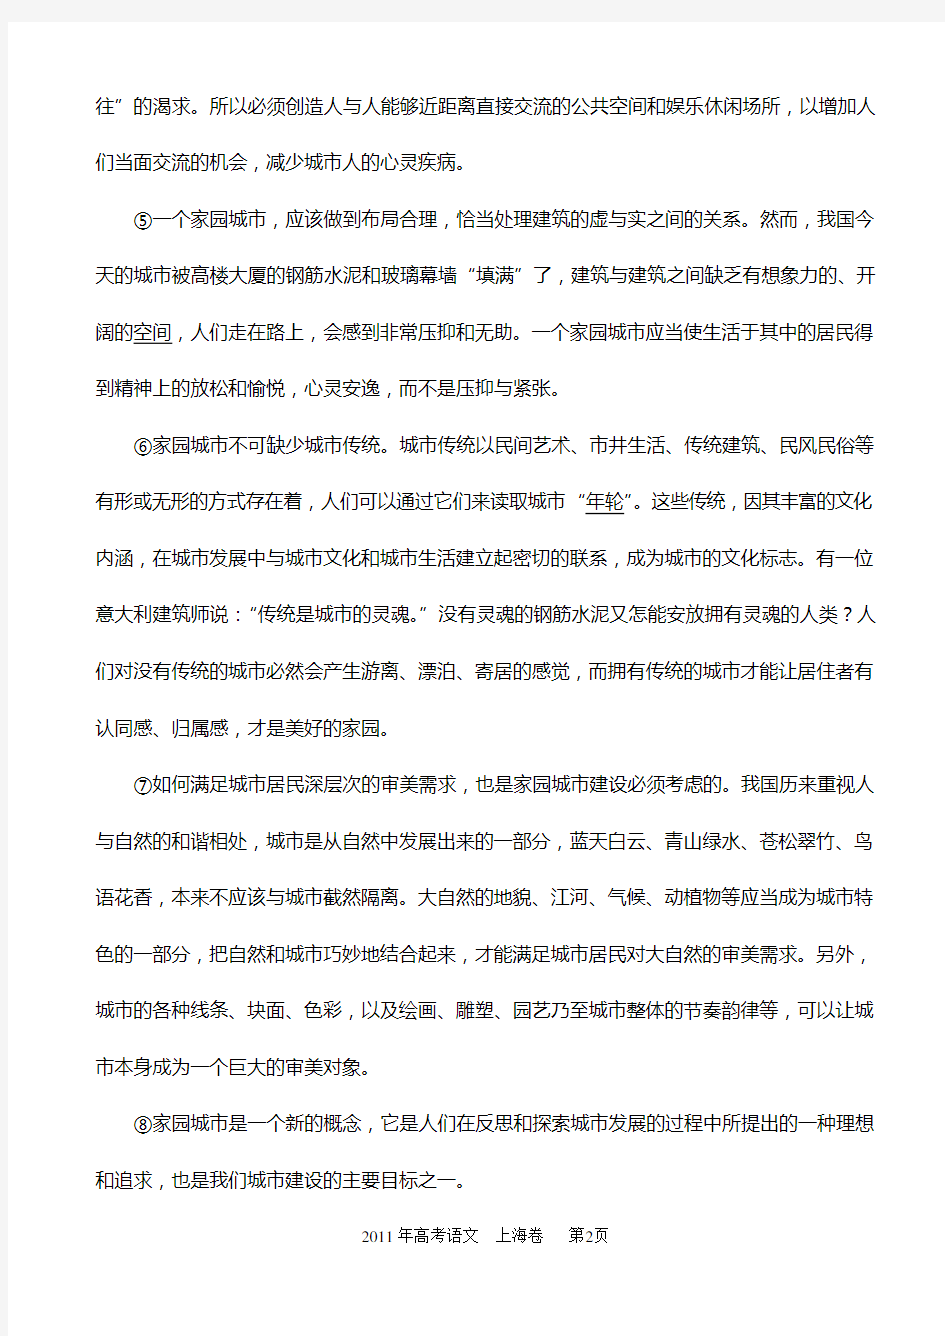 2011年上海语文高考试卷和答案